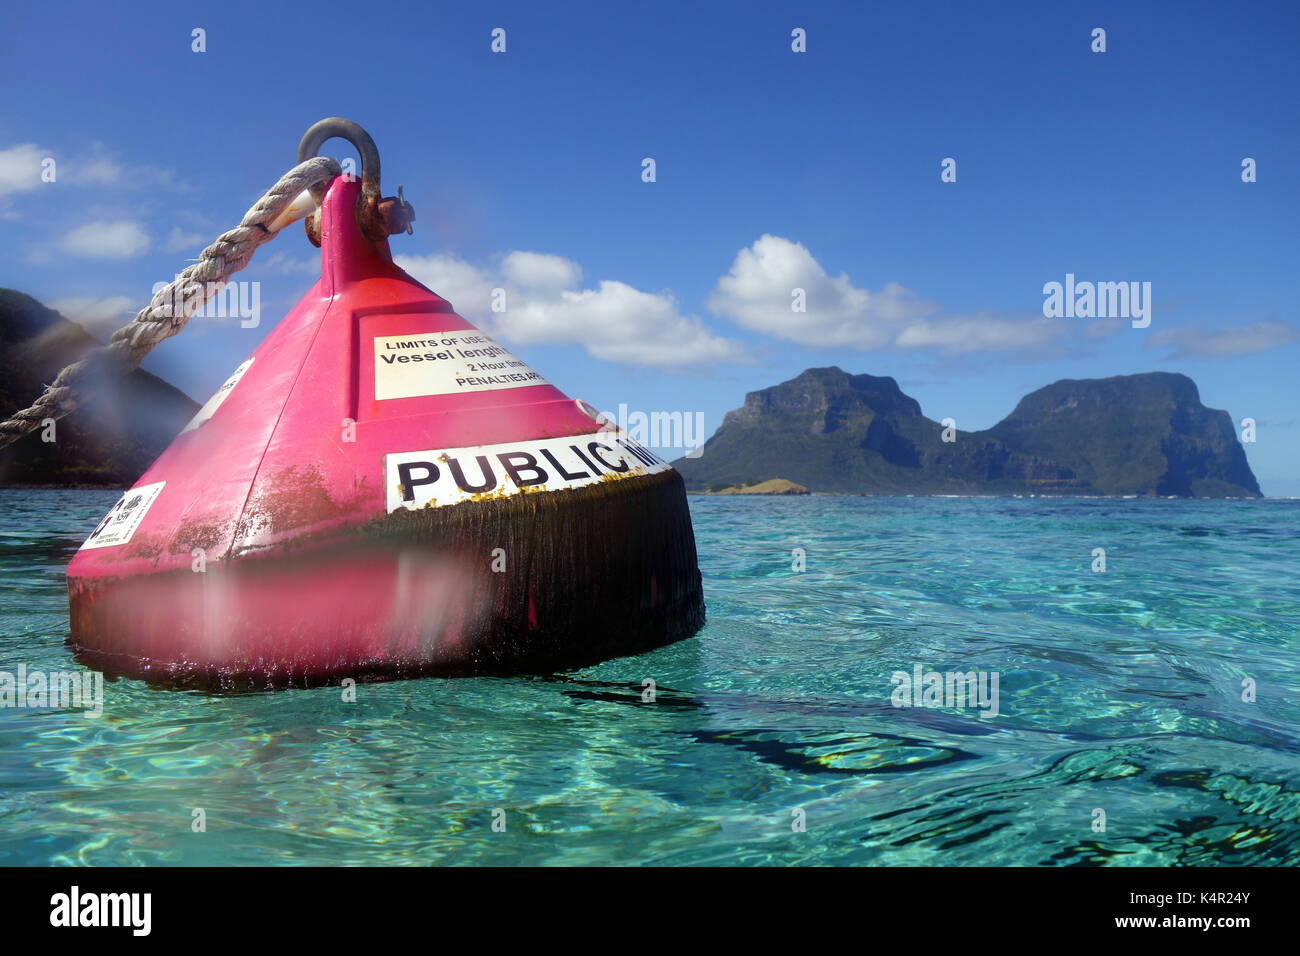 Public rose bouée d dans la zone de protection marine de la Baie du Nord, l'île Lord Howe lagoon, NSW, Australie. Pas de PR Banque D'Images